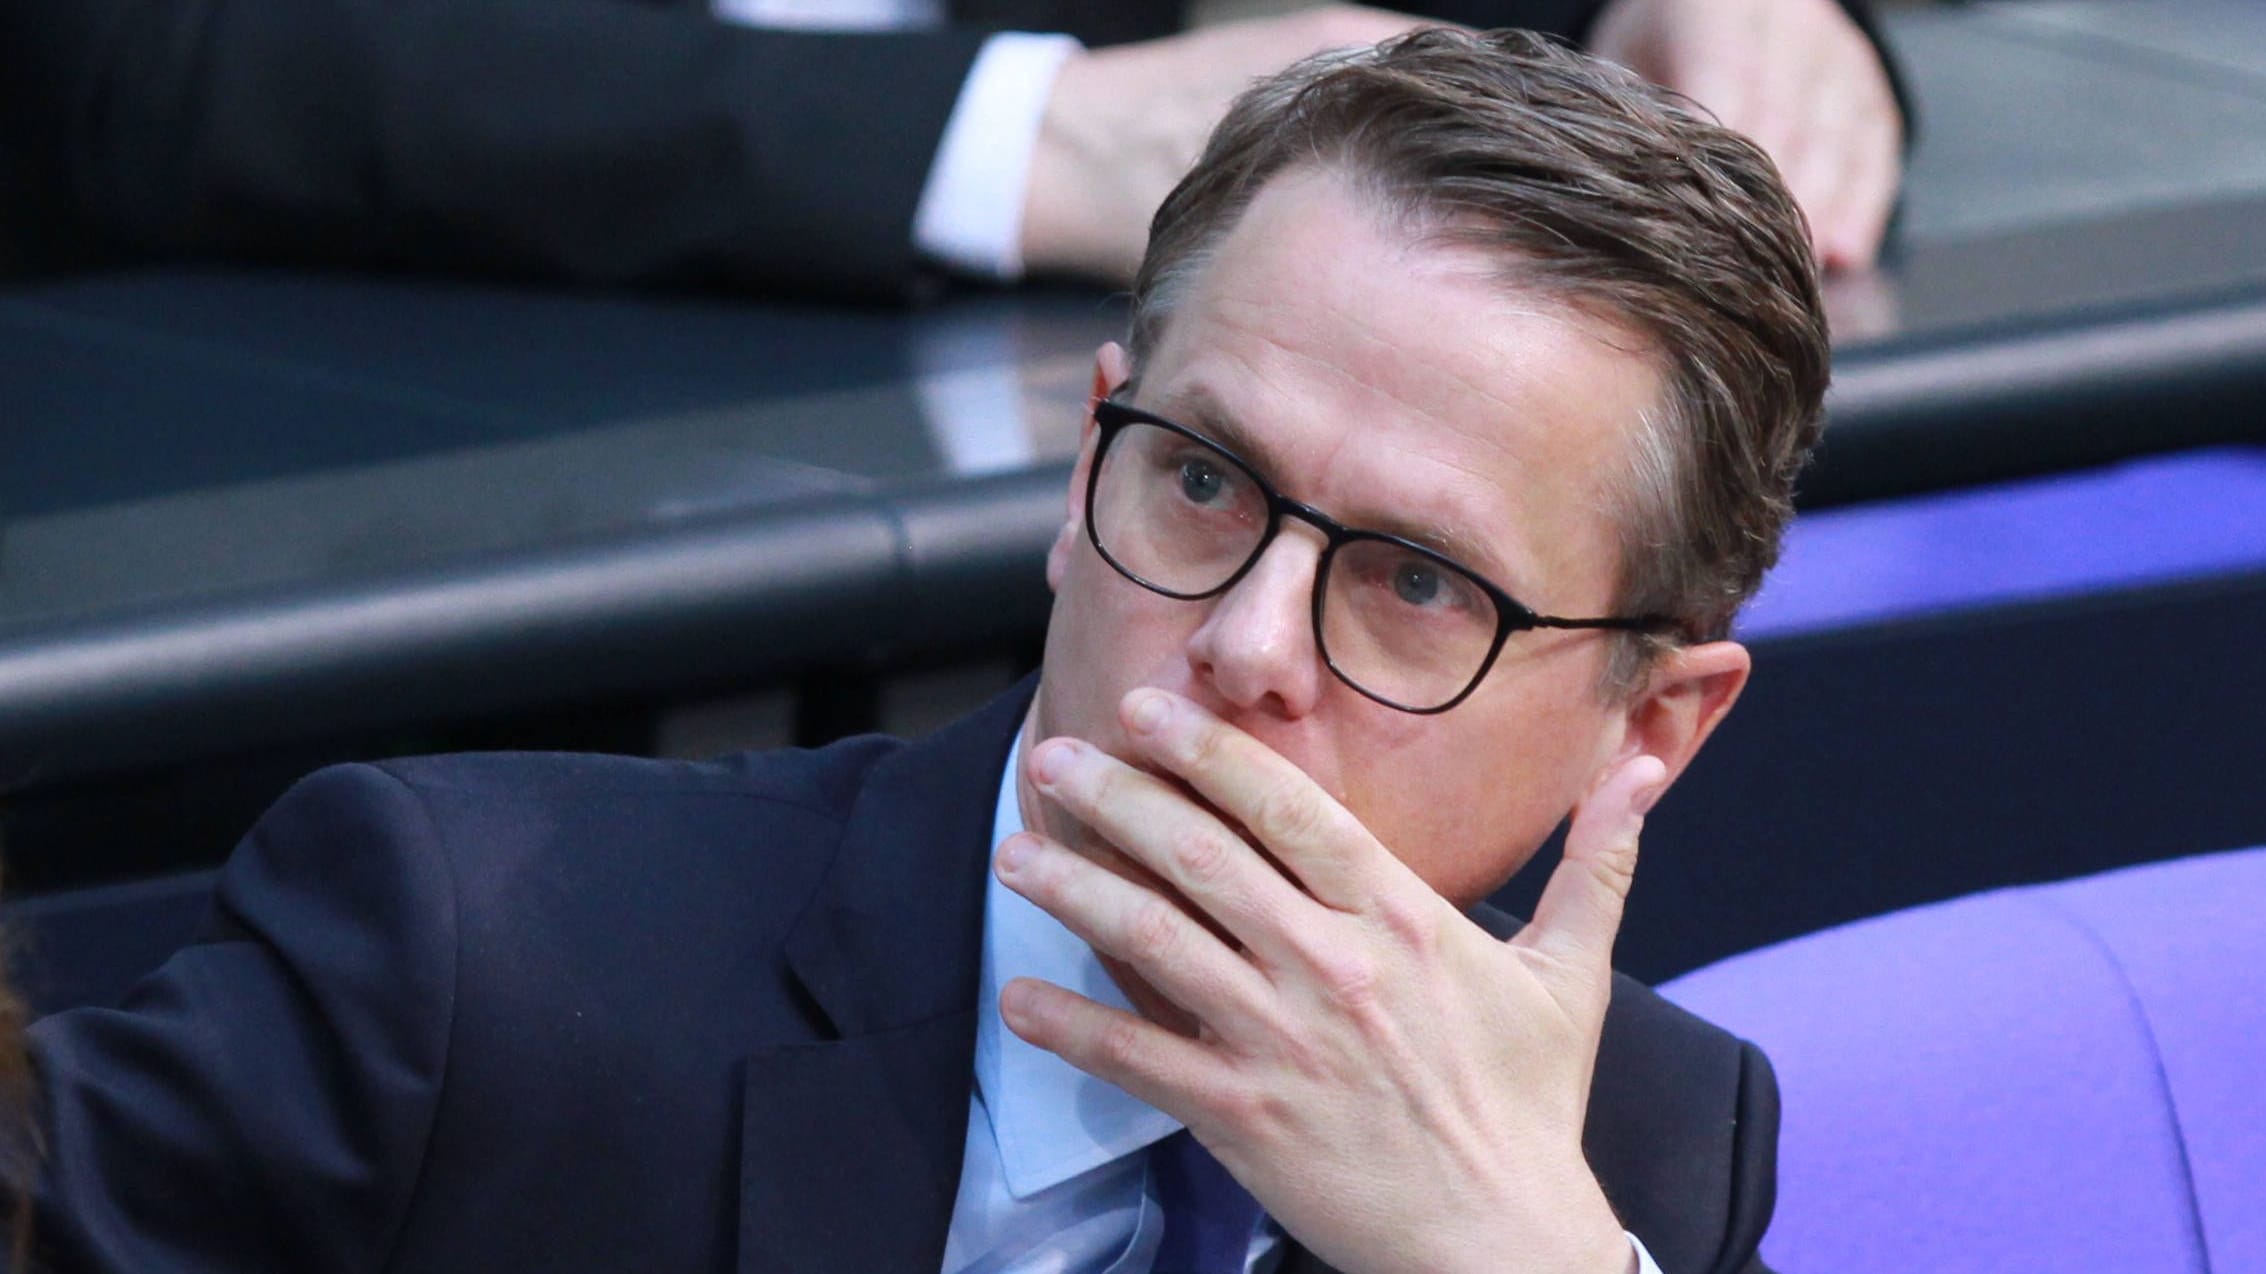 Strafmündigkeit mit 12 Jahren? CDU-Vorstoß erntet scharfe Kritik